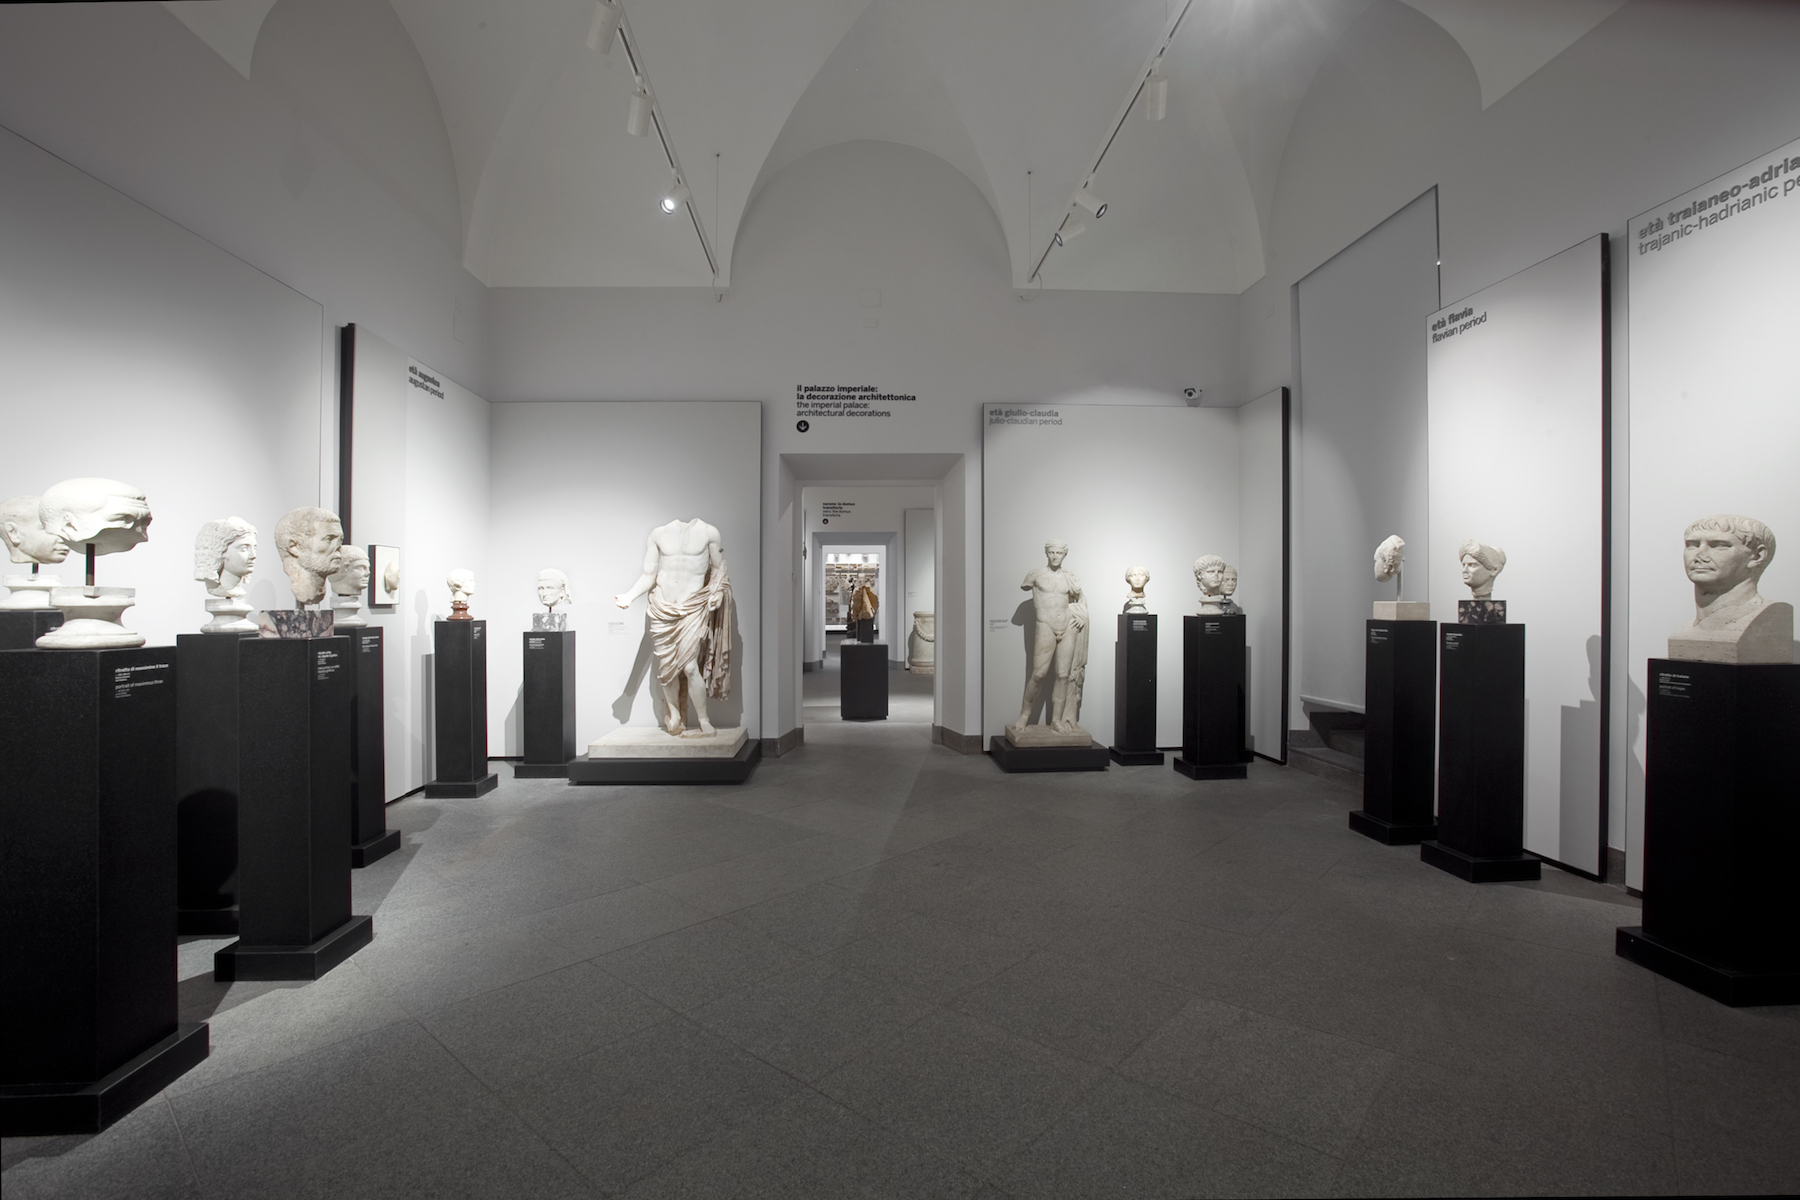 Museo Palatino - Palazzo Imperiale - Ritratti